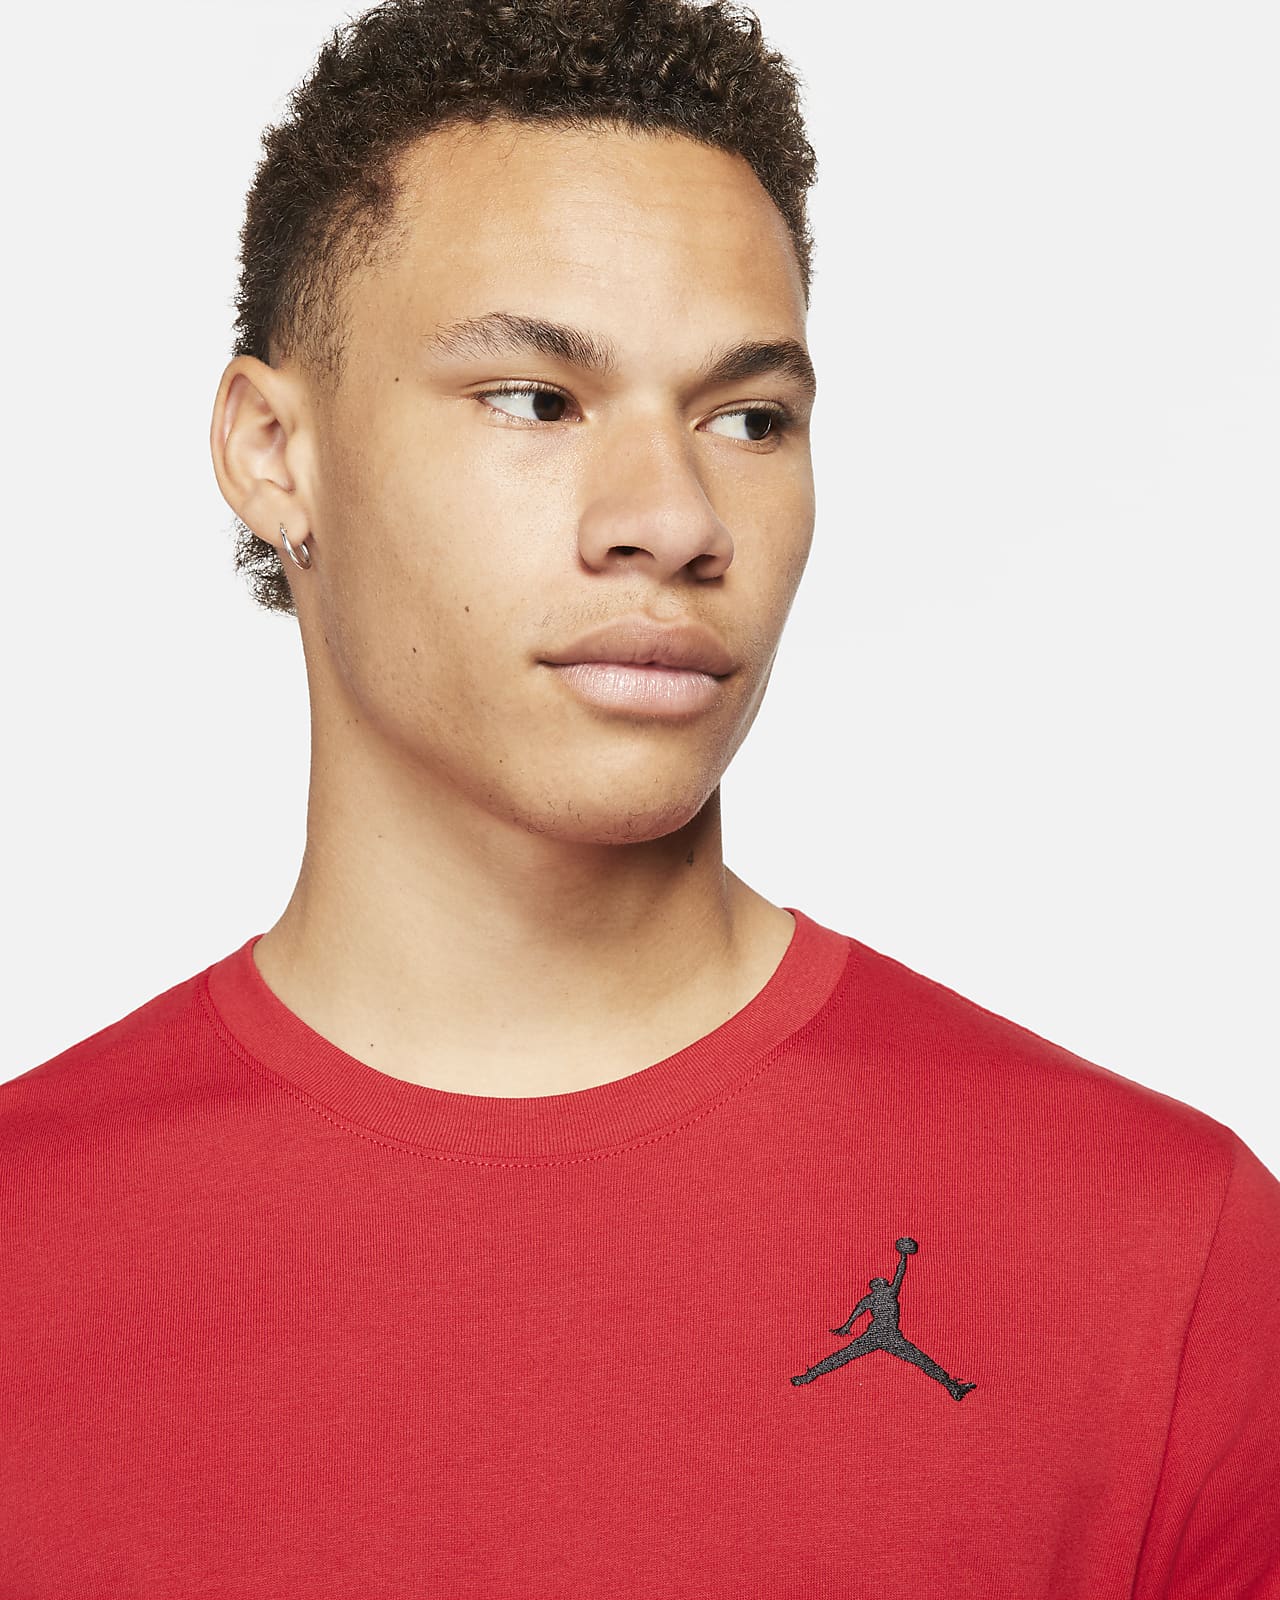 Jordan Jumpman Men's Short-Sleeve T-Shirt. Nike SA